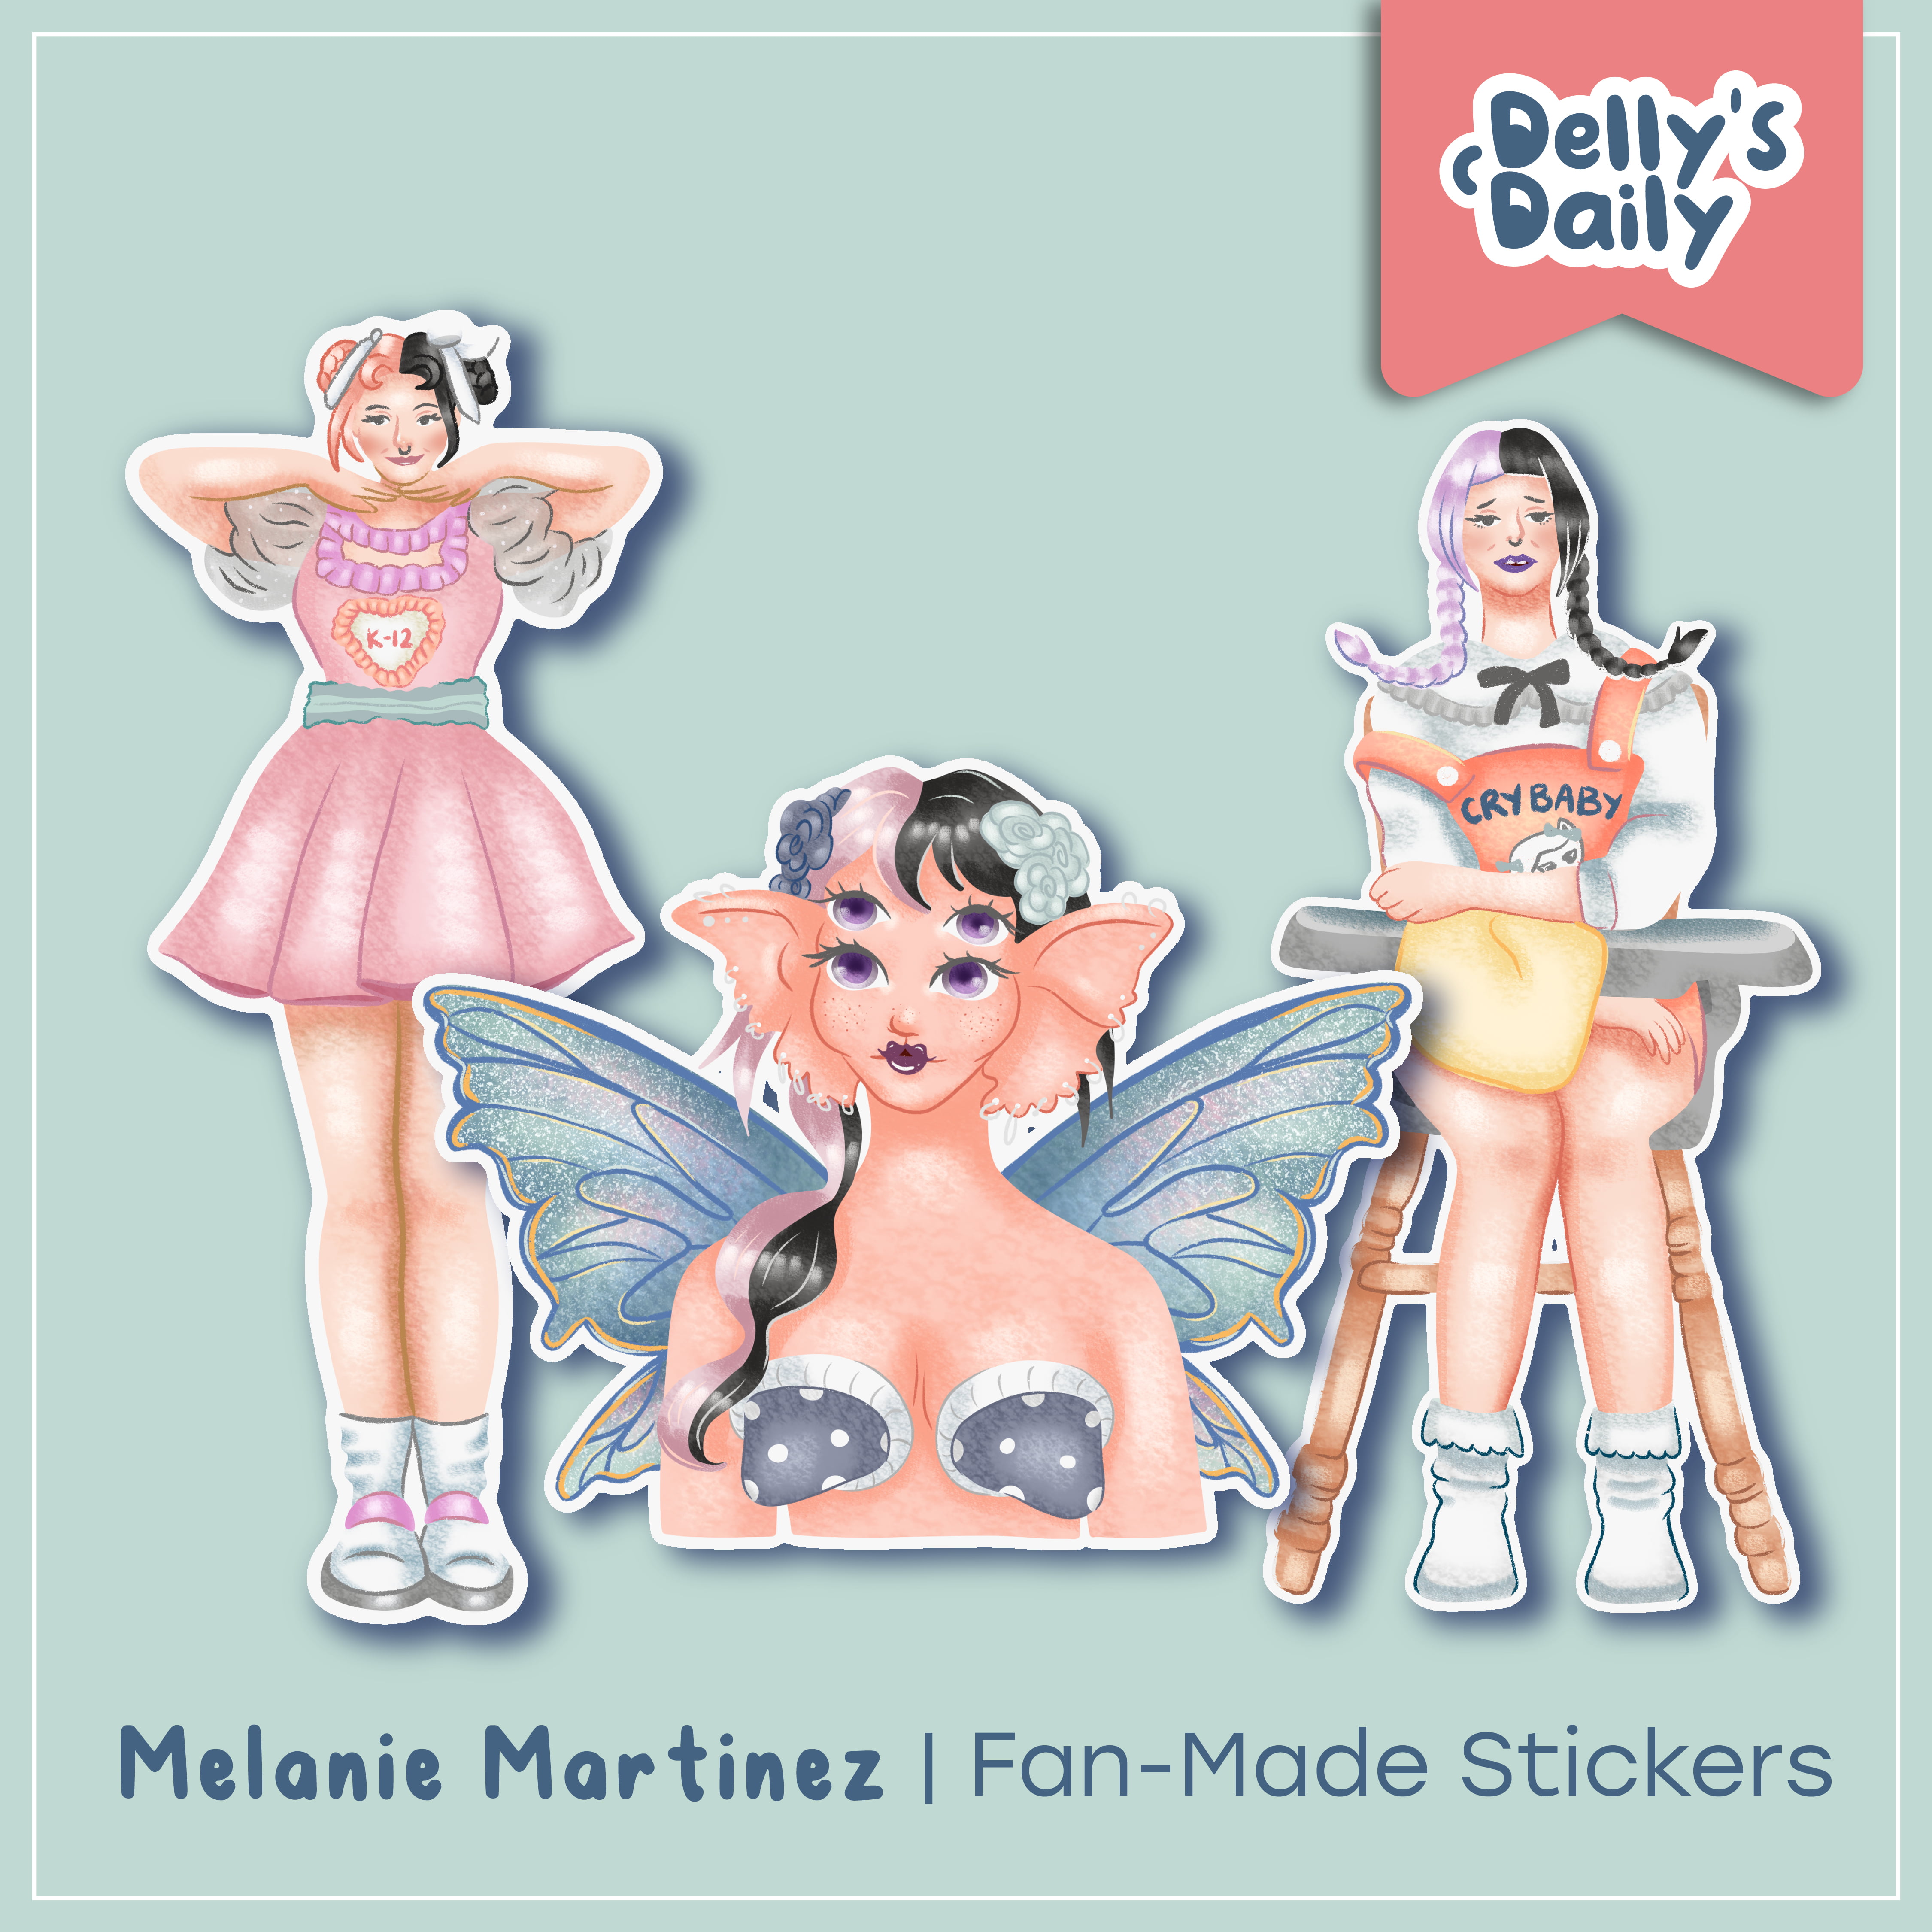  Melanie Martinez Stickers